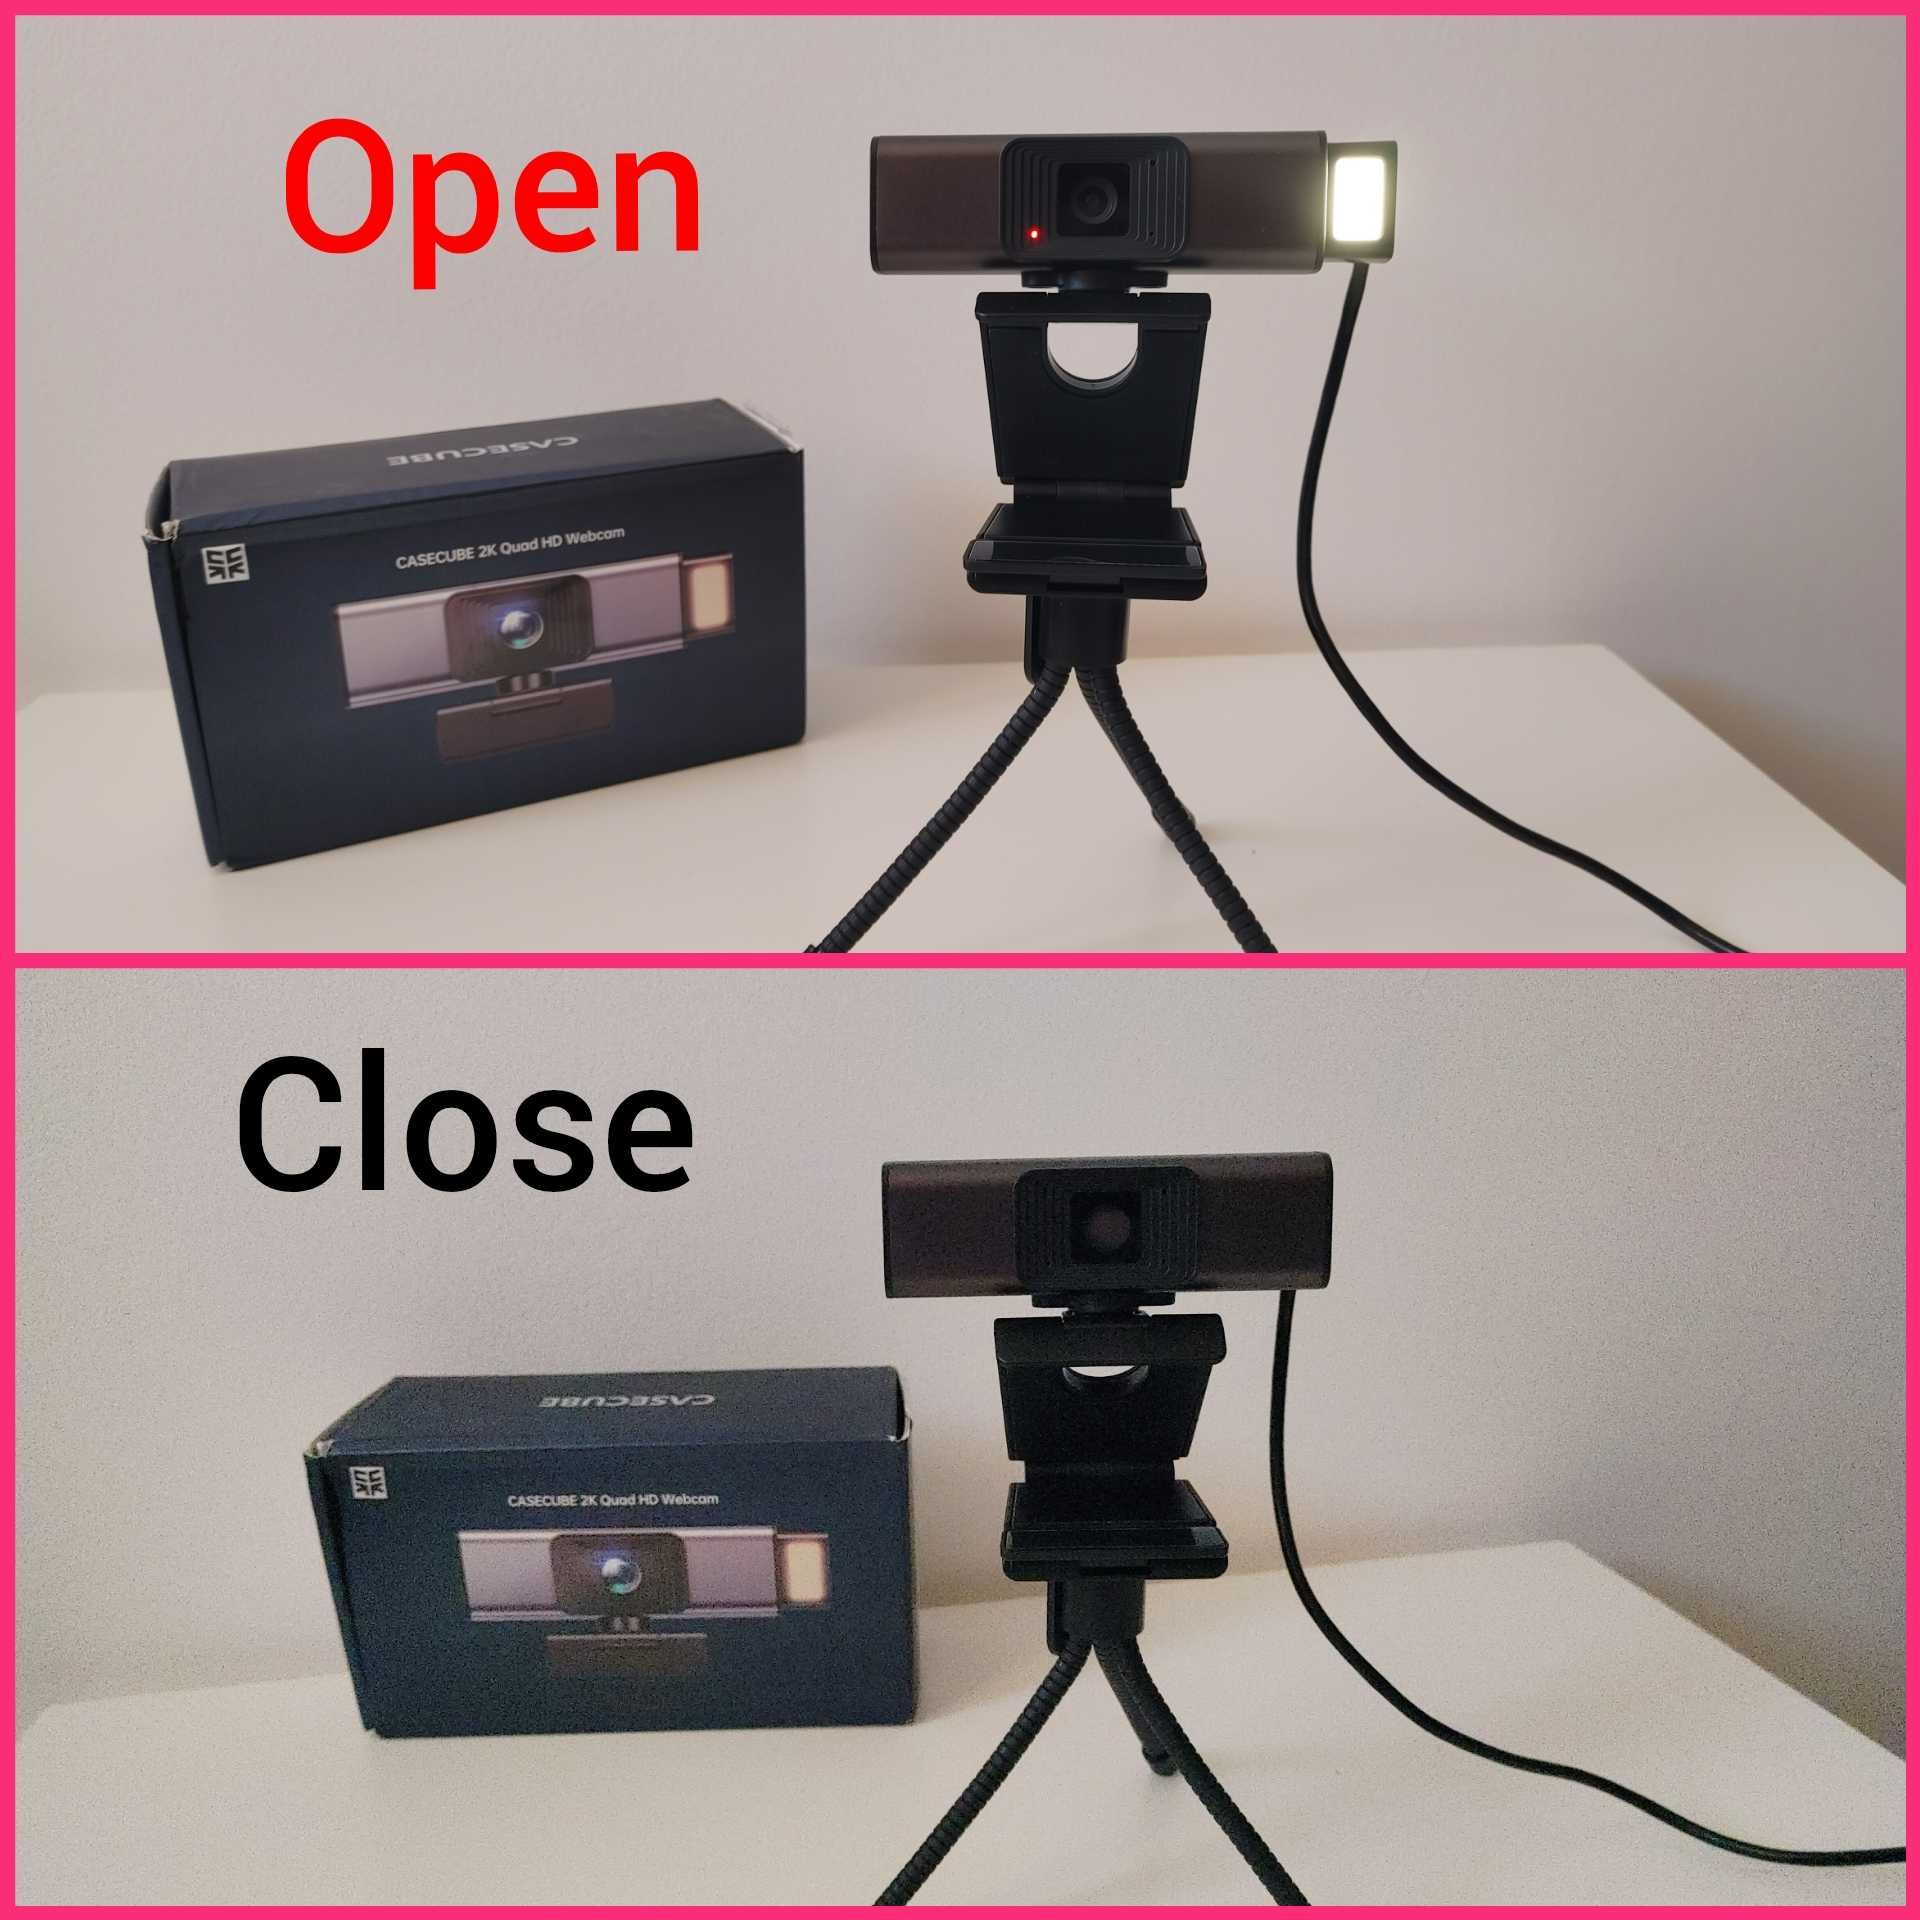 США 2K Quad HD Вебкамера SONY Широкоугольная 120° + Штатив Веб камера